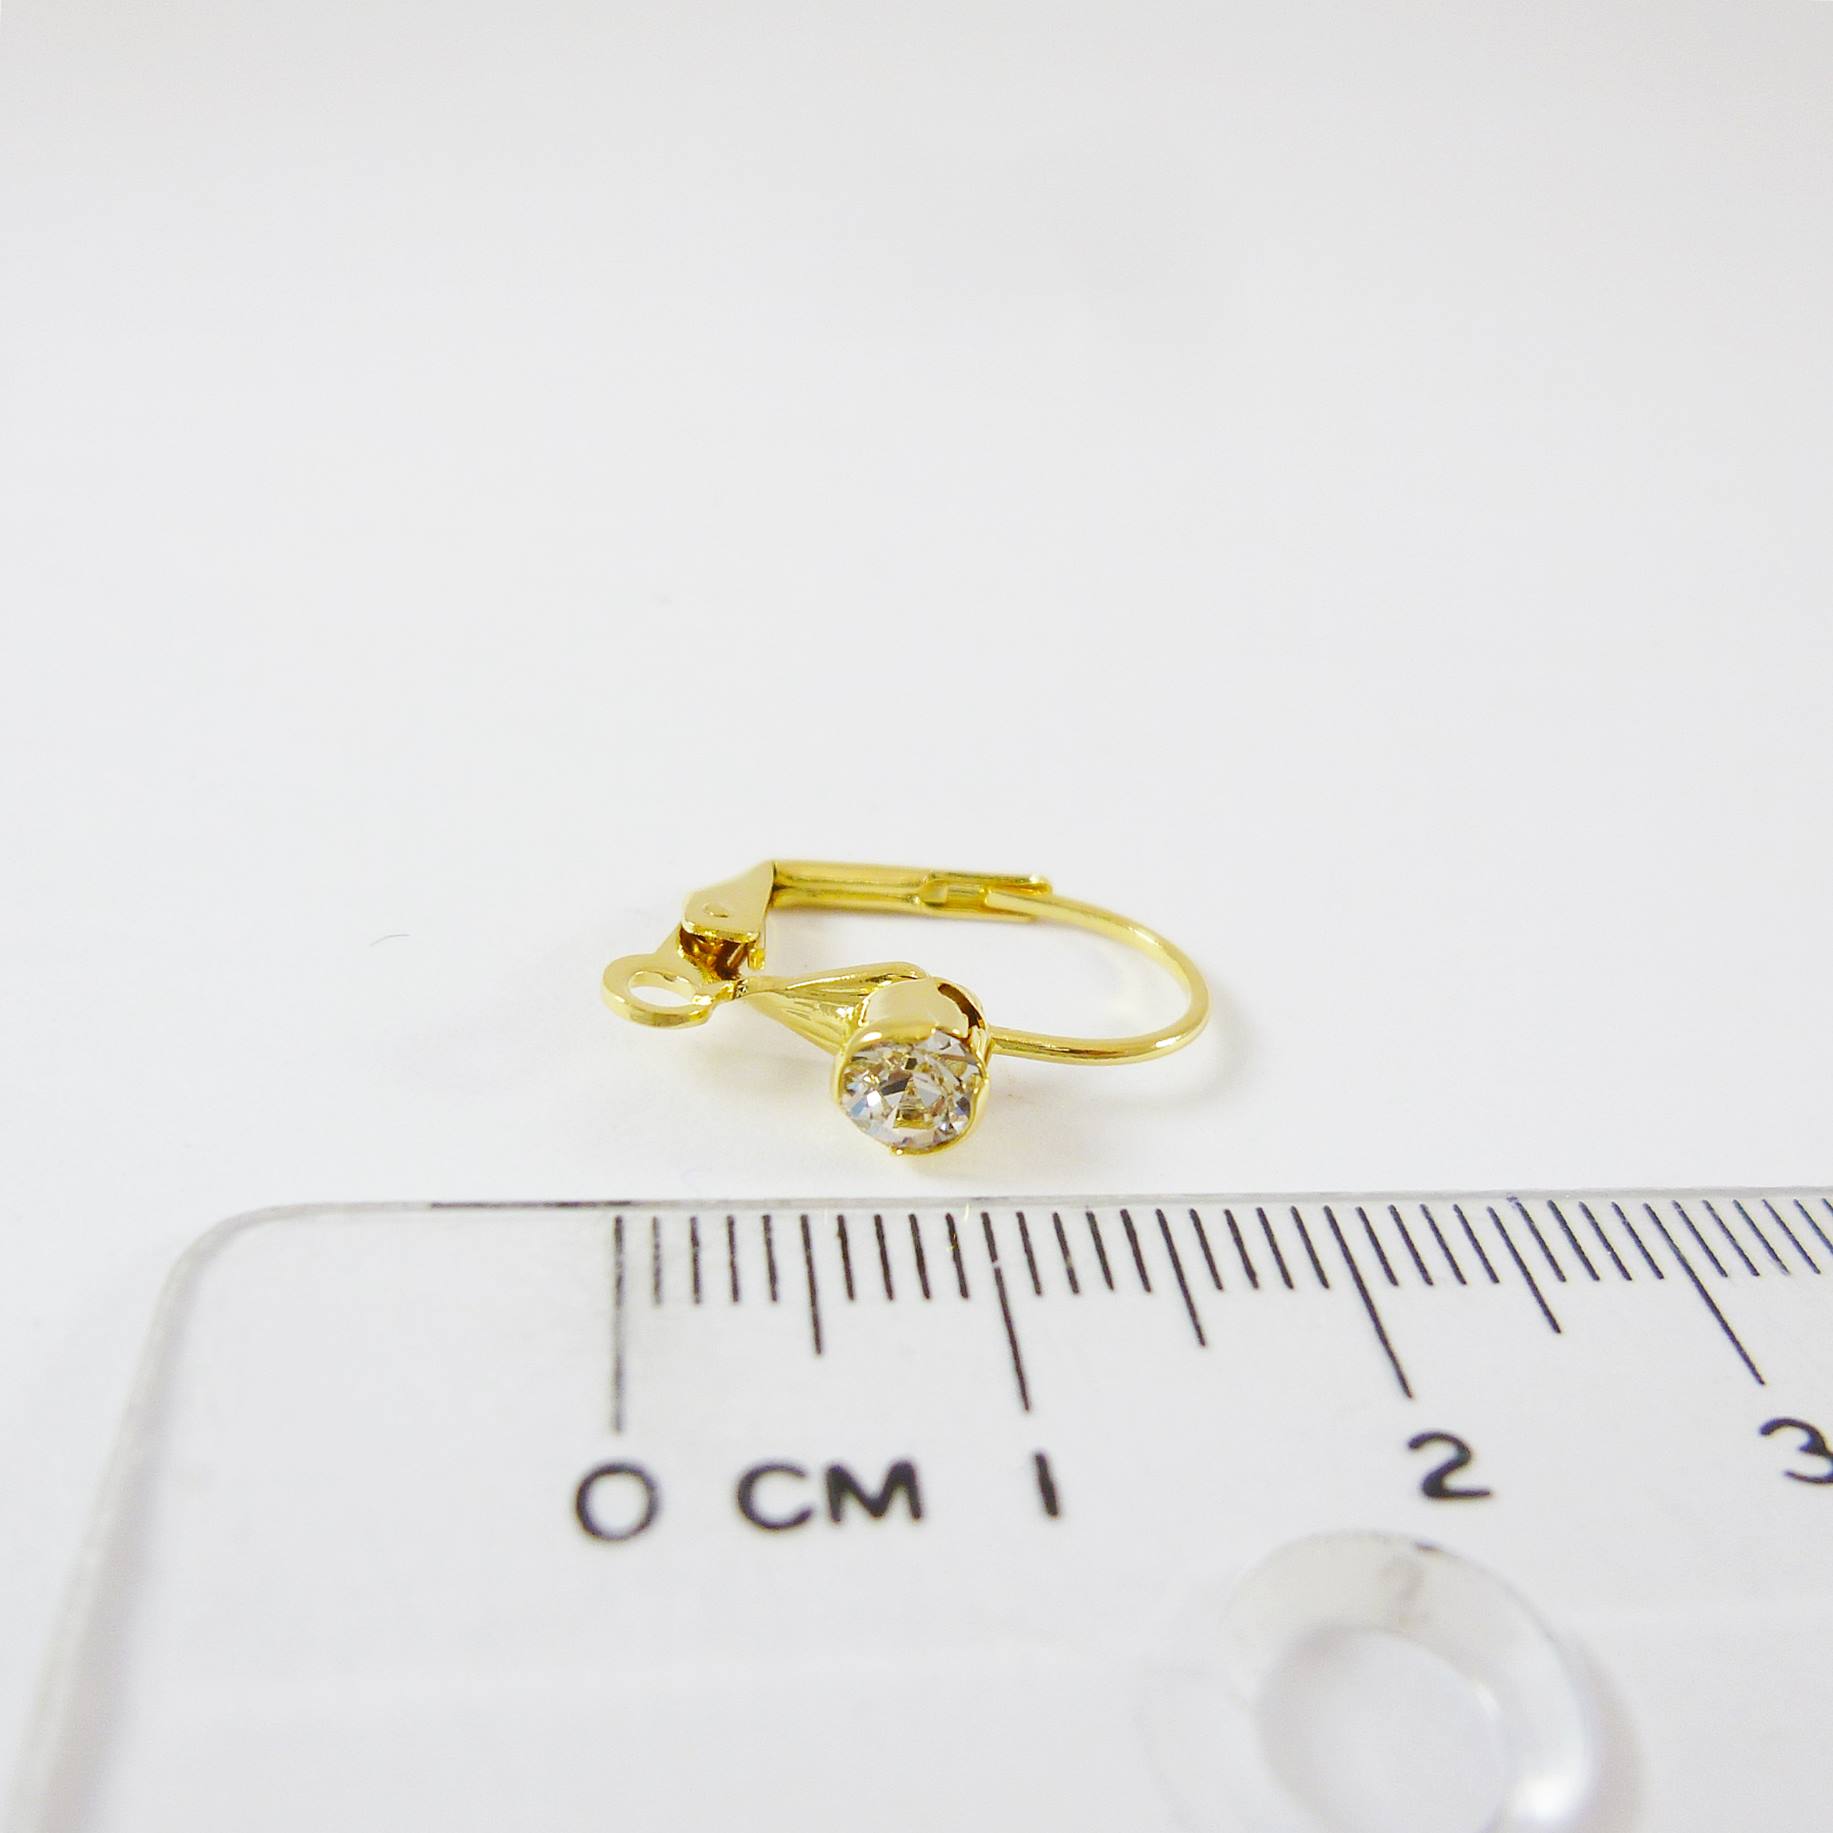 銅鍍金色貝殼形單鑽耳環